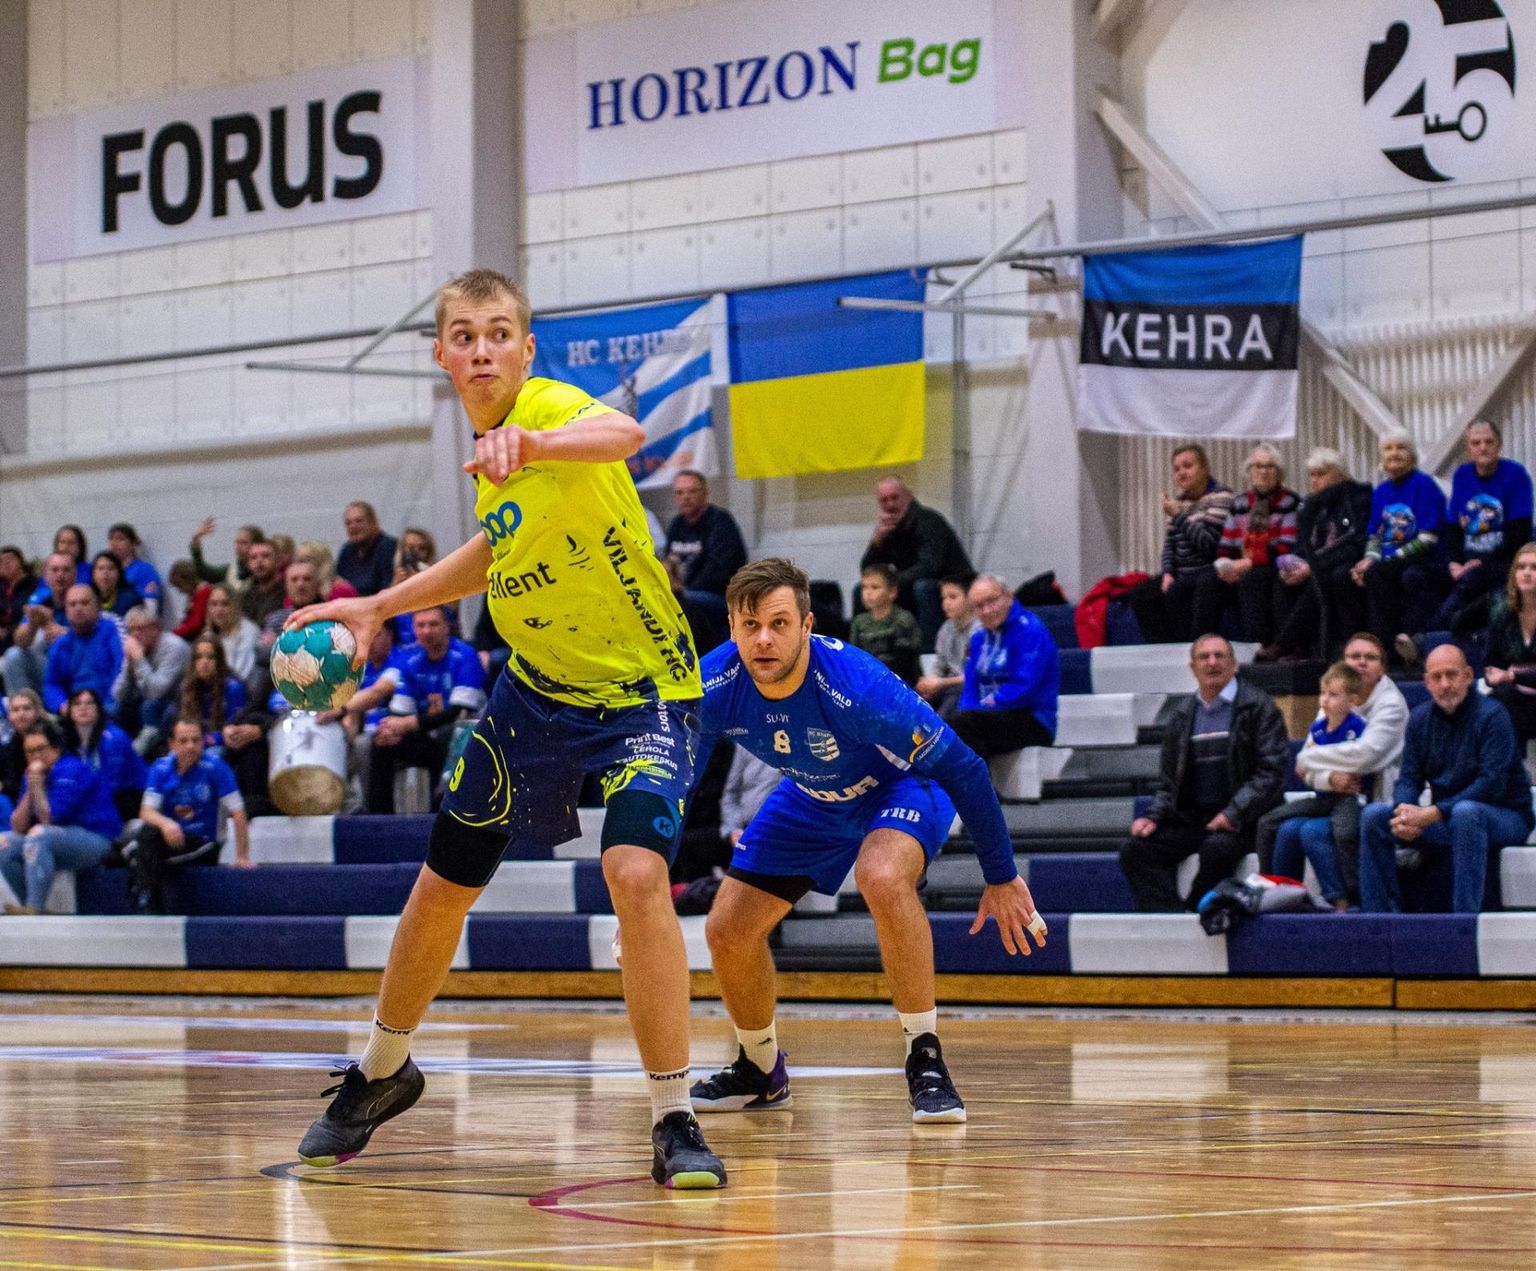 Kolmapäevases Eesti meistriliiga mängus HC Kehra / Horizon Pulp & Paperi vastu viskas Viljandi HC
resultatiivseima mängijana üheksa väravat Hendrik Koks.